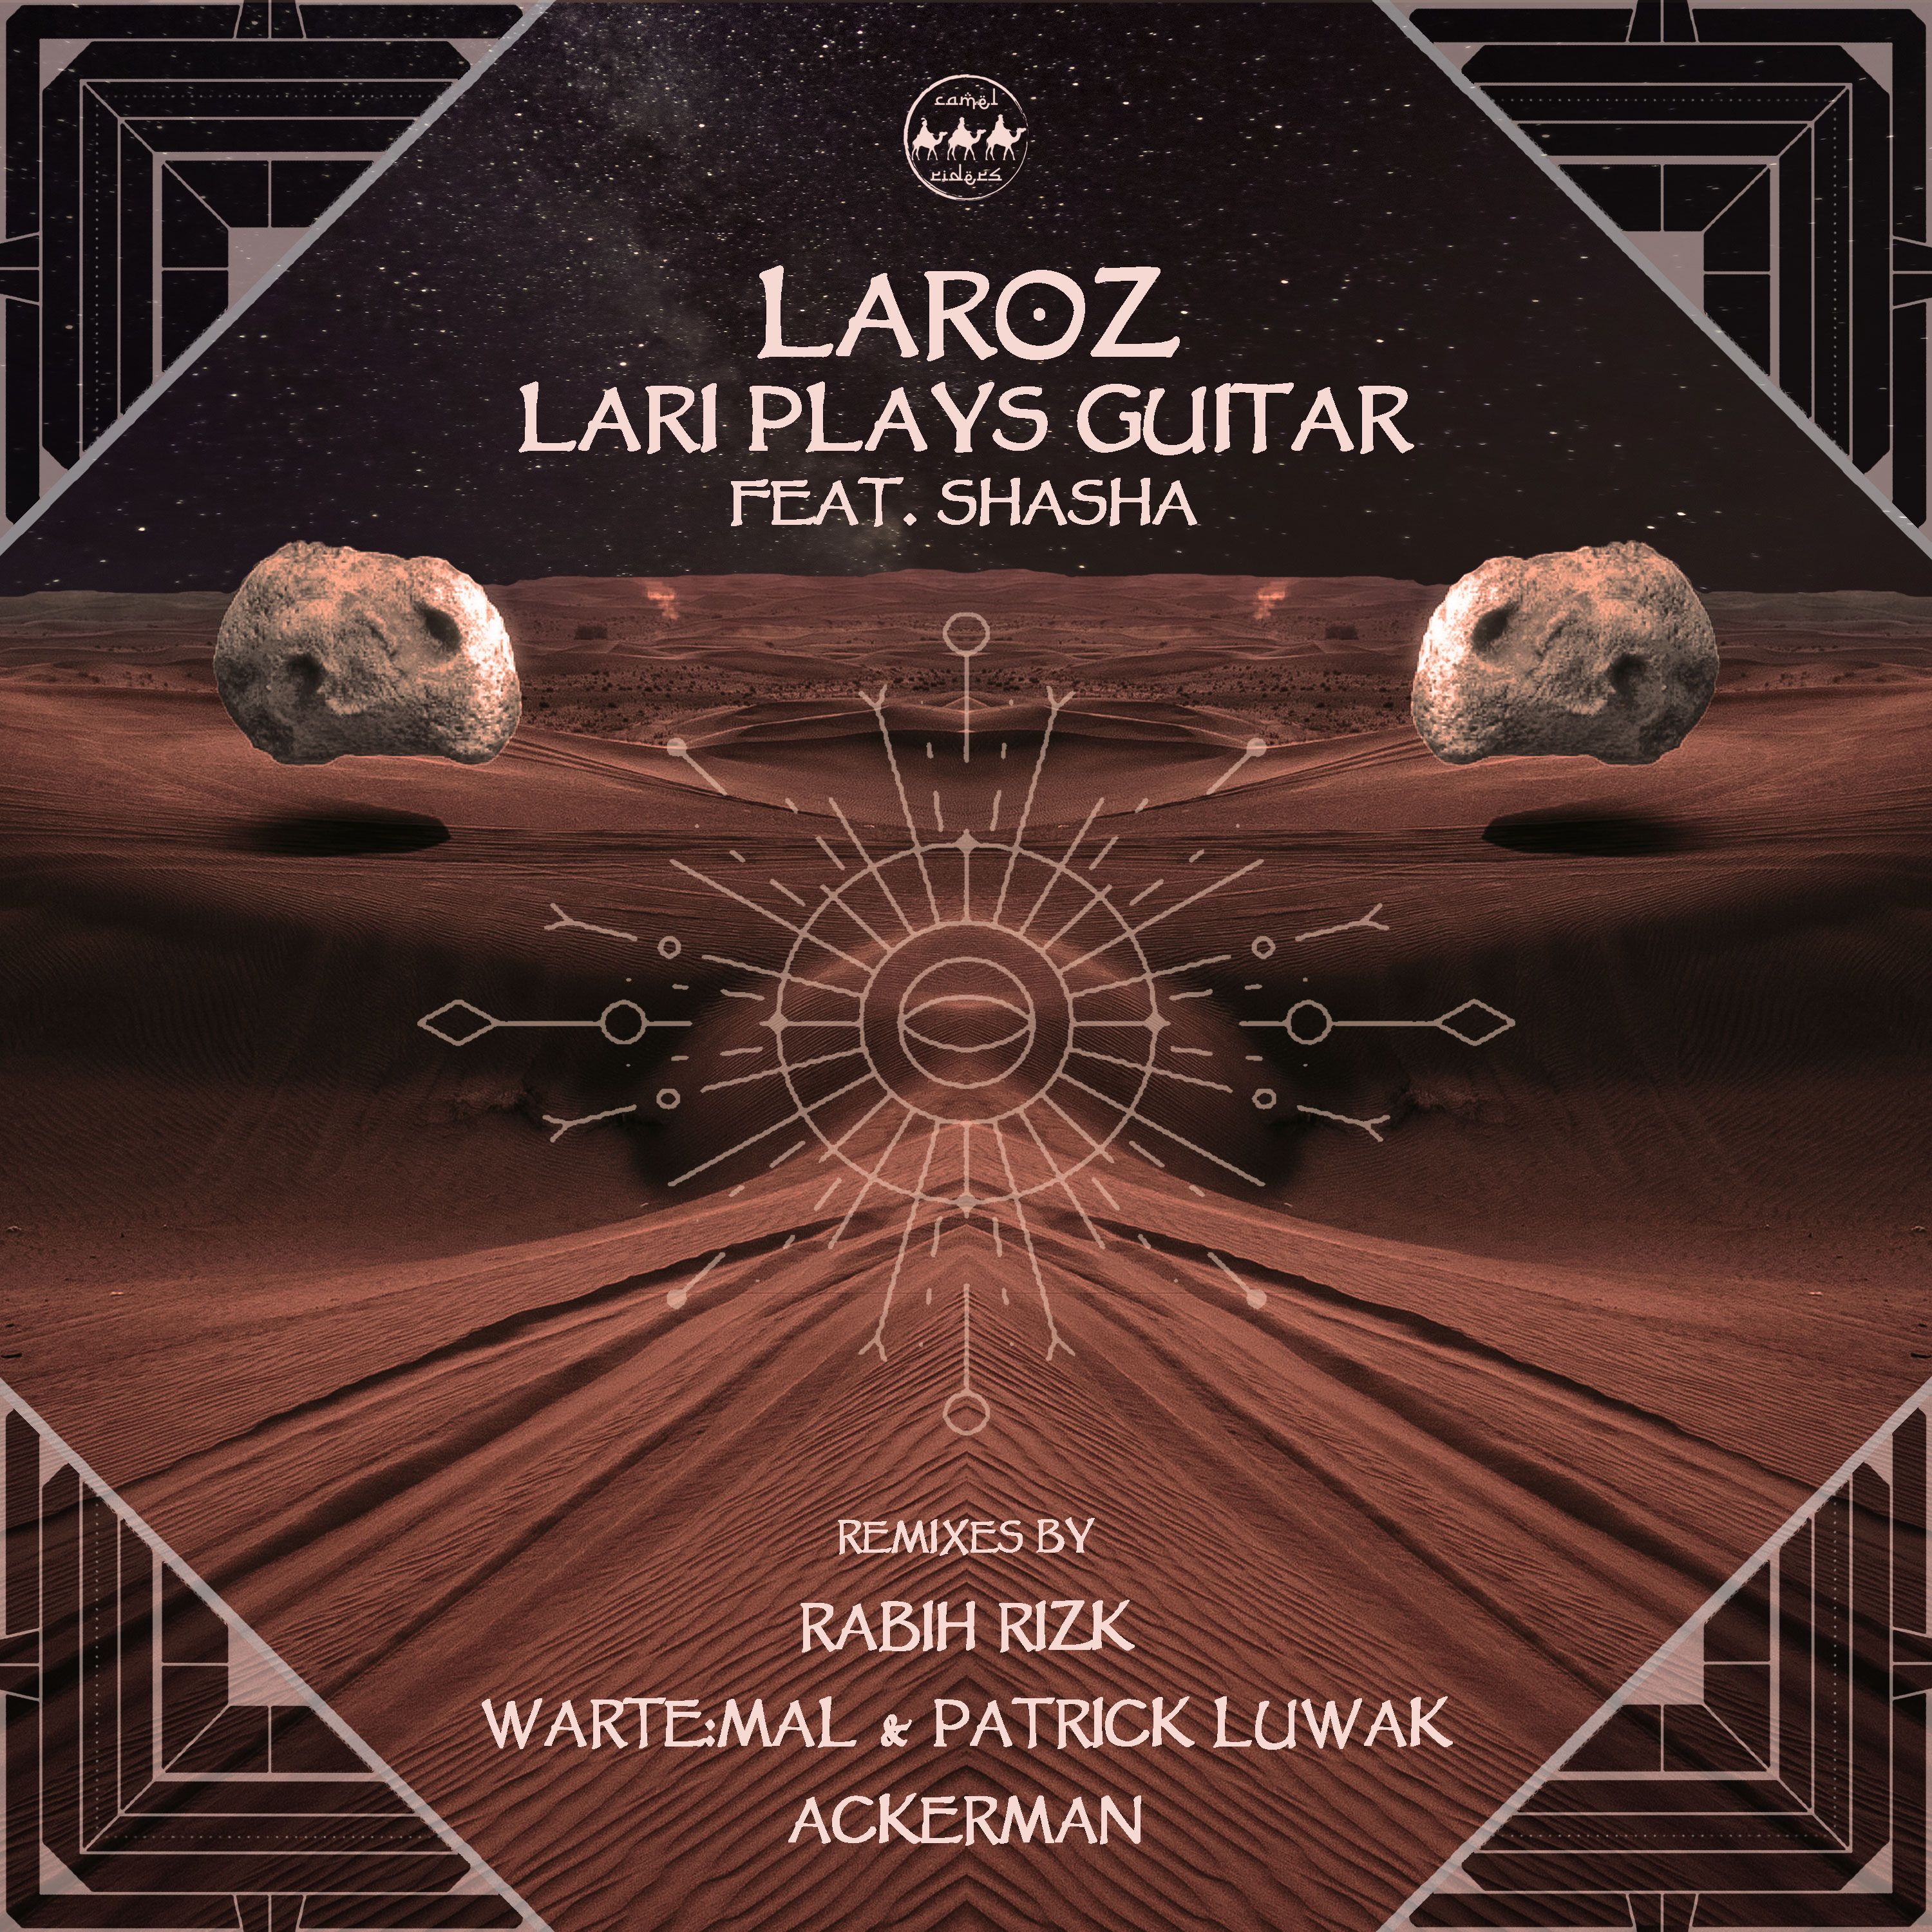 Sii mai Laroz - Lari Plays Guitar FT. SHASHA (Wartemal & Patrick Luwak Remix)